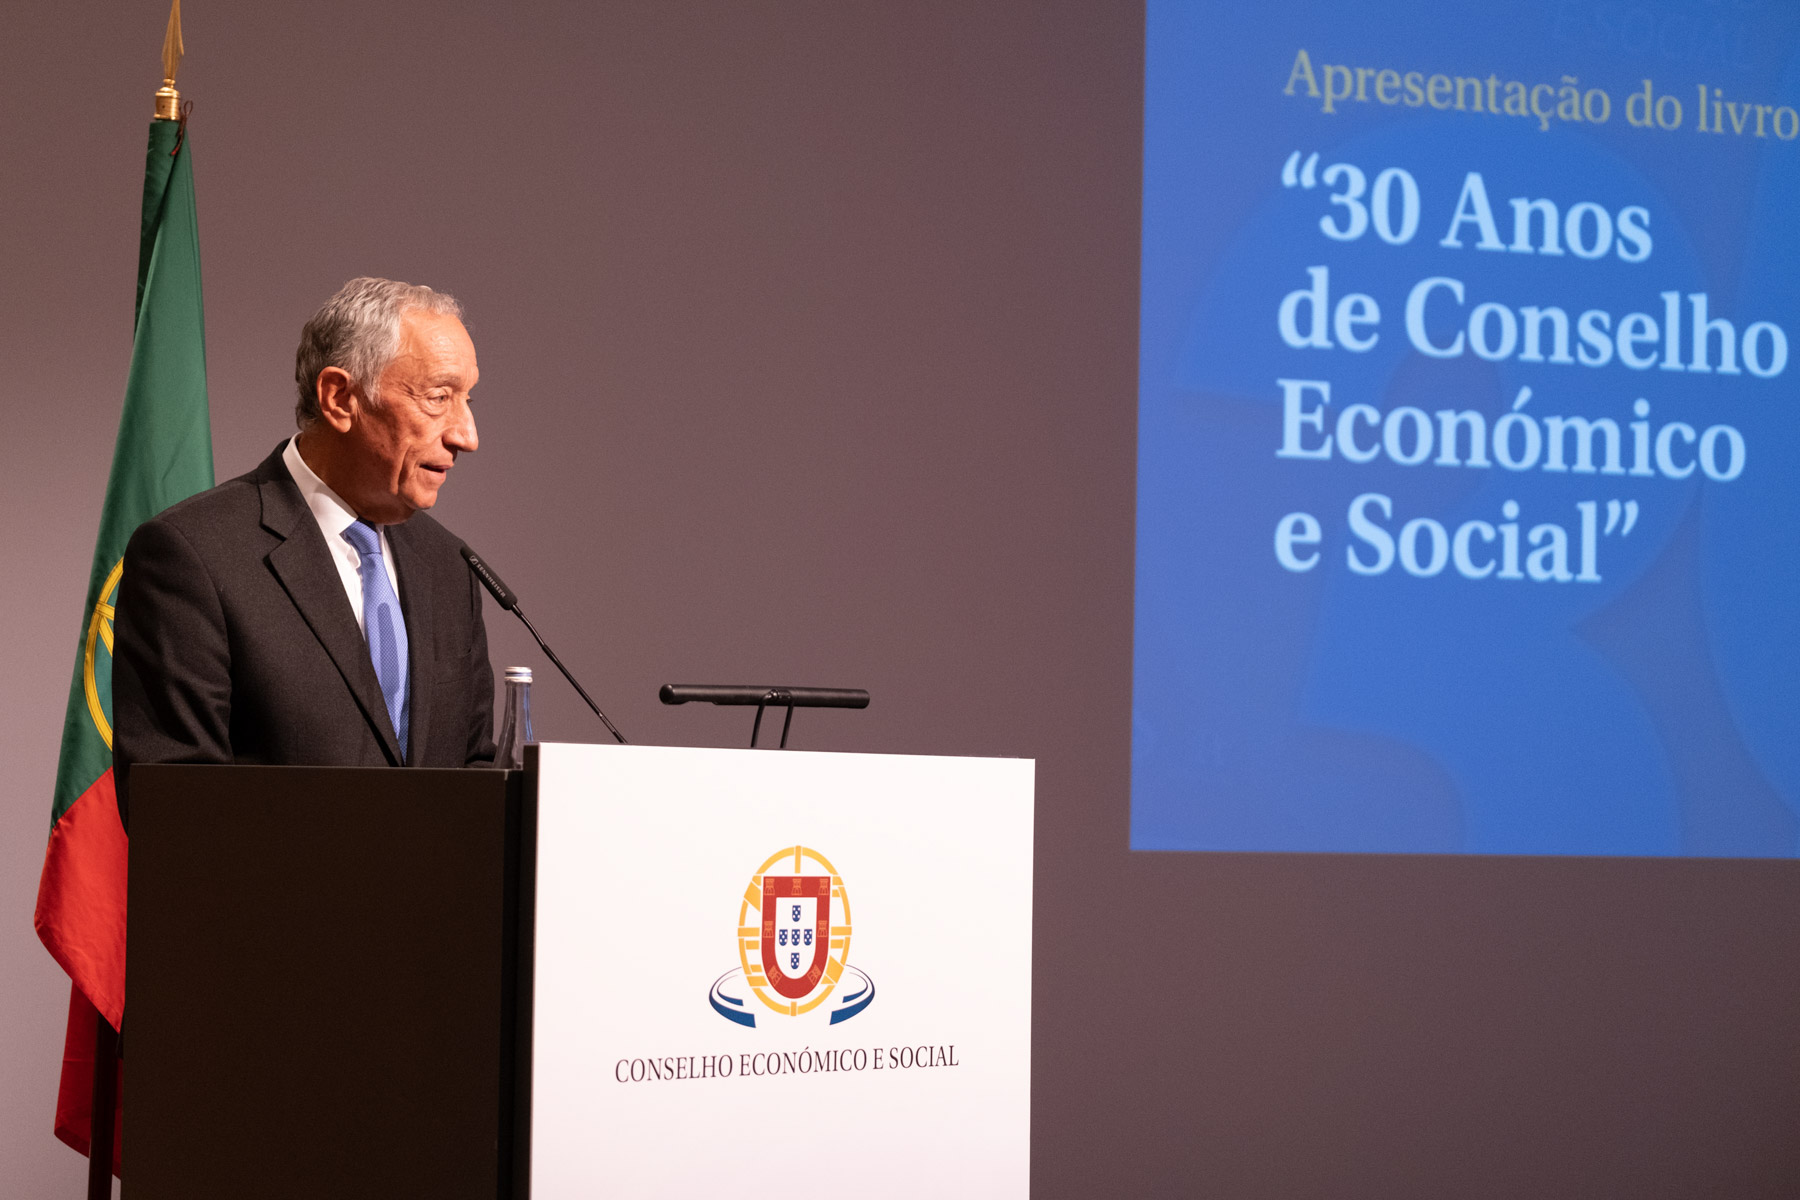 Encerramento da sessão de apresentação do livro “30 Anos de Conselho Económico e Social” no Centro Cultural de Belém, em Lisboa  Créditos: © Rui Ochoa